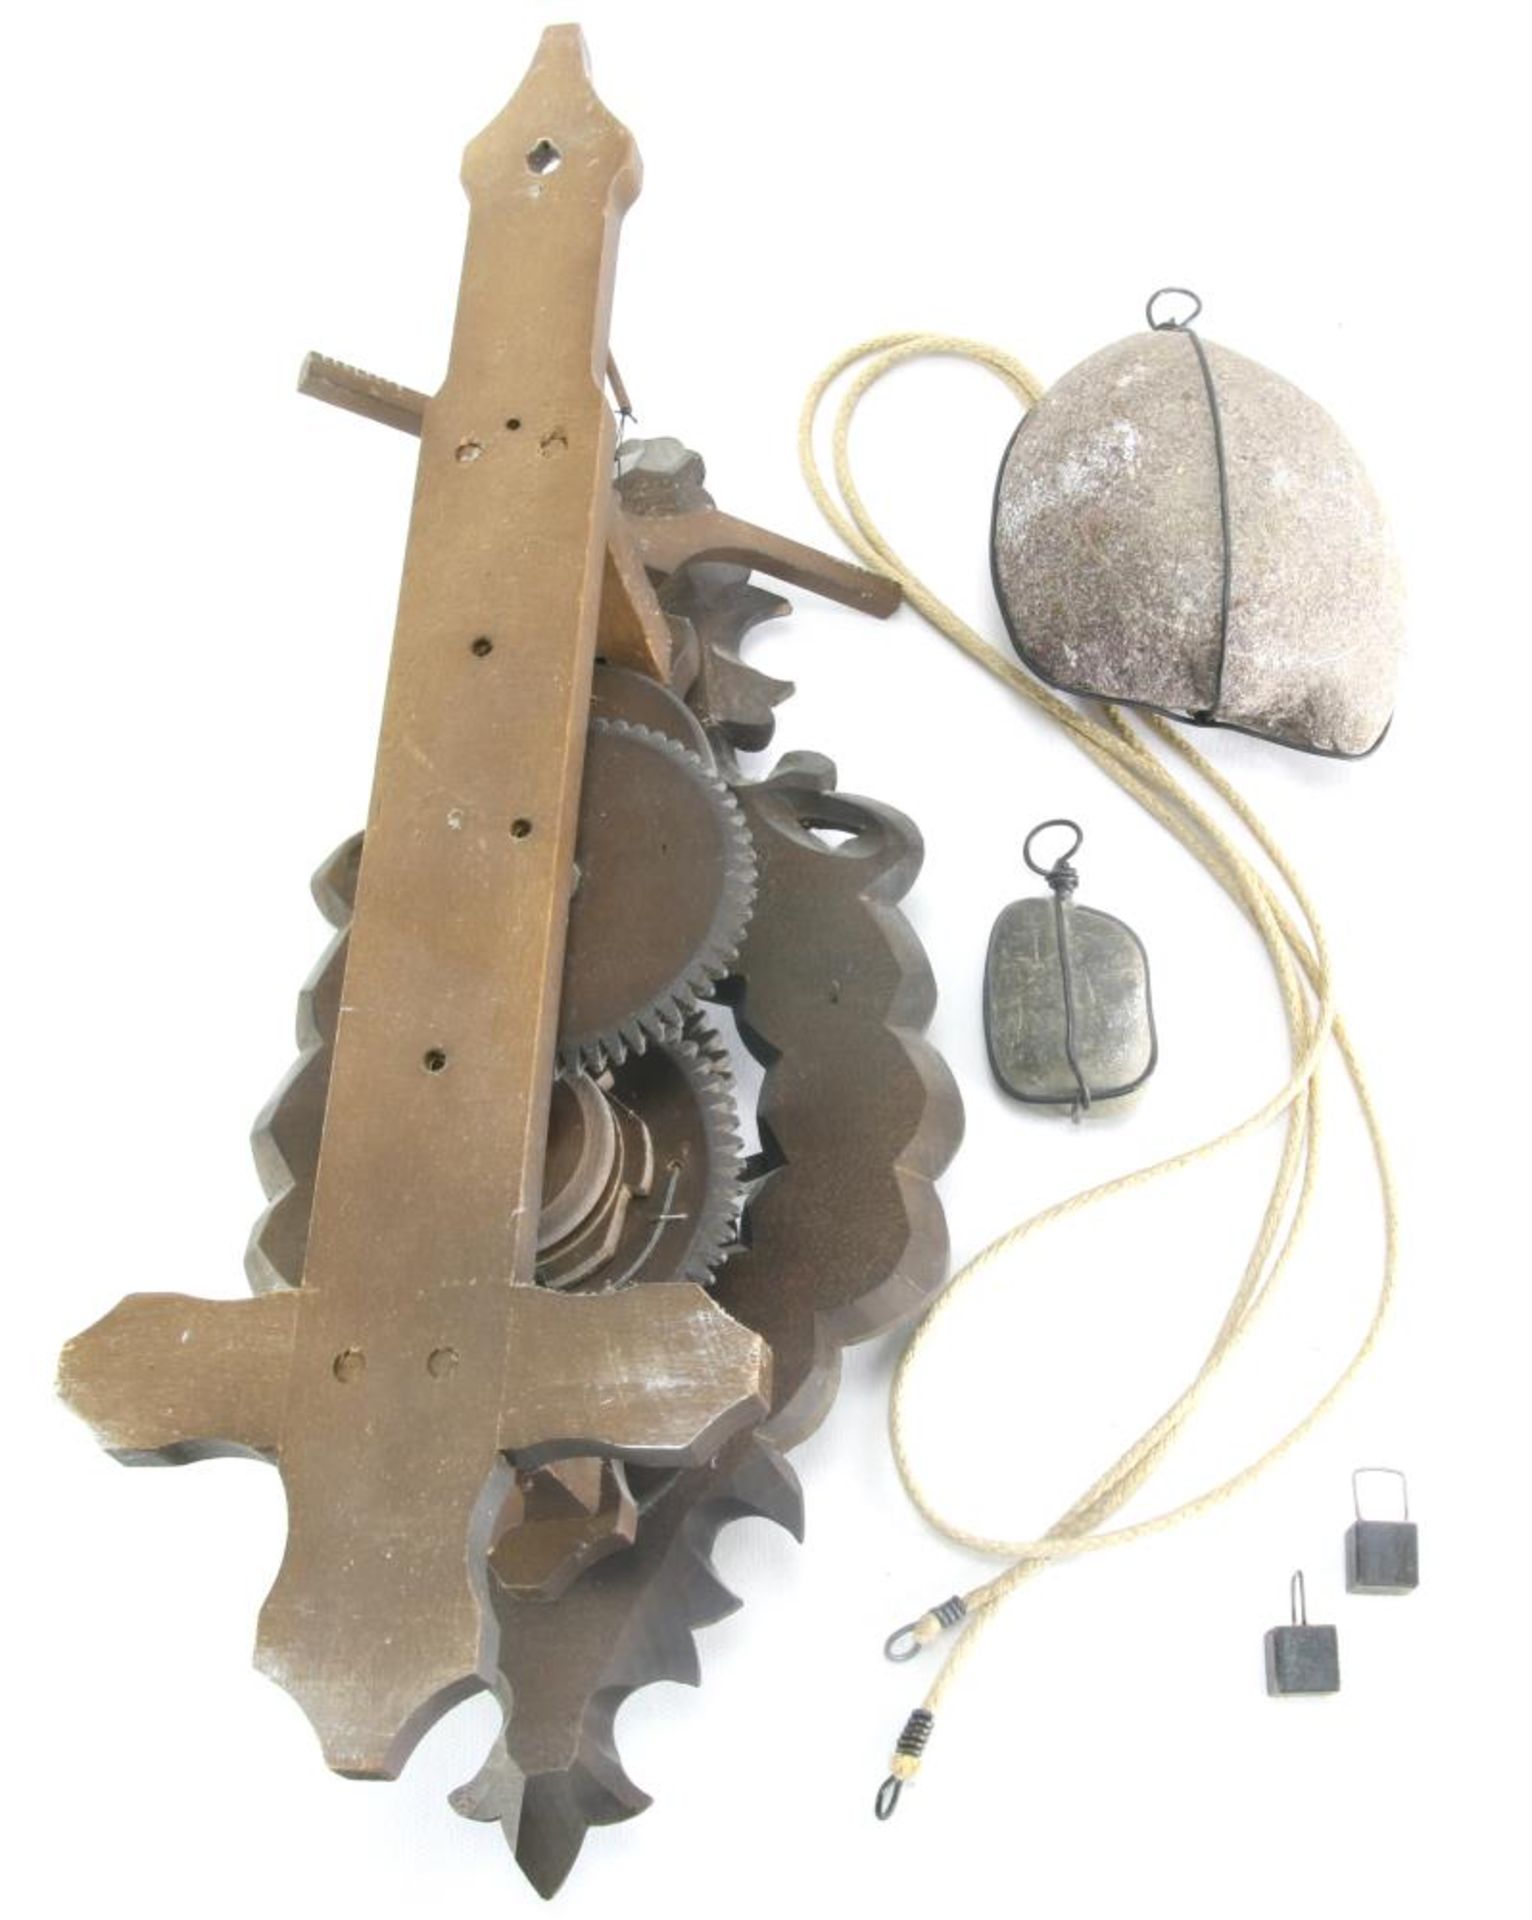 Waagbalkenuhr. Barockstil 20. Jahrhundert. Holzräderwerk mit imitierten Steingewichten. Größe ca. - Bild 3 aus 3